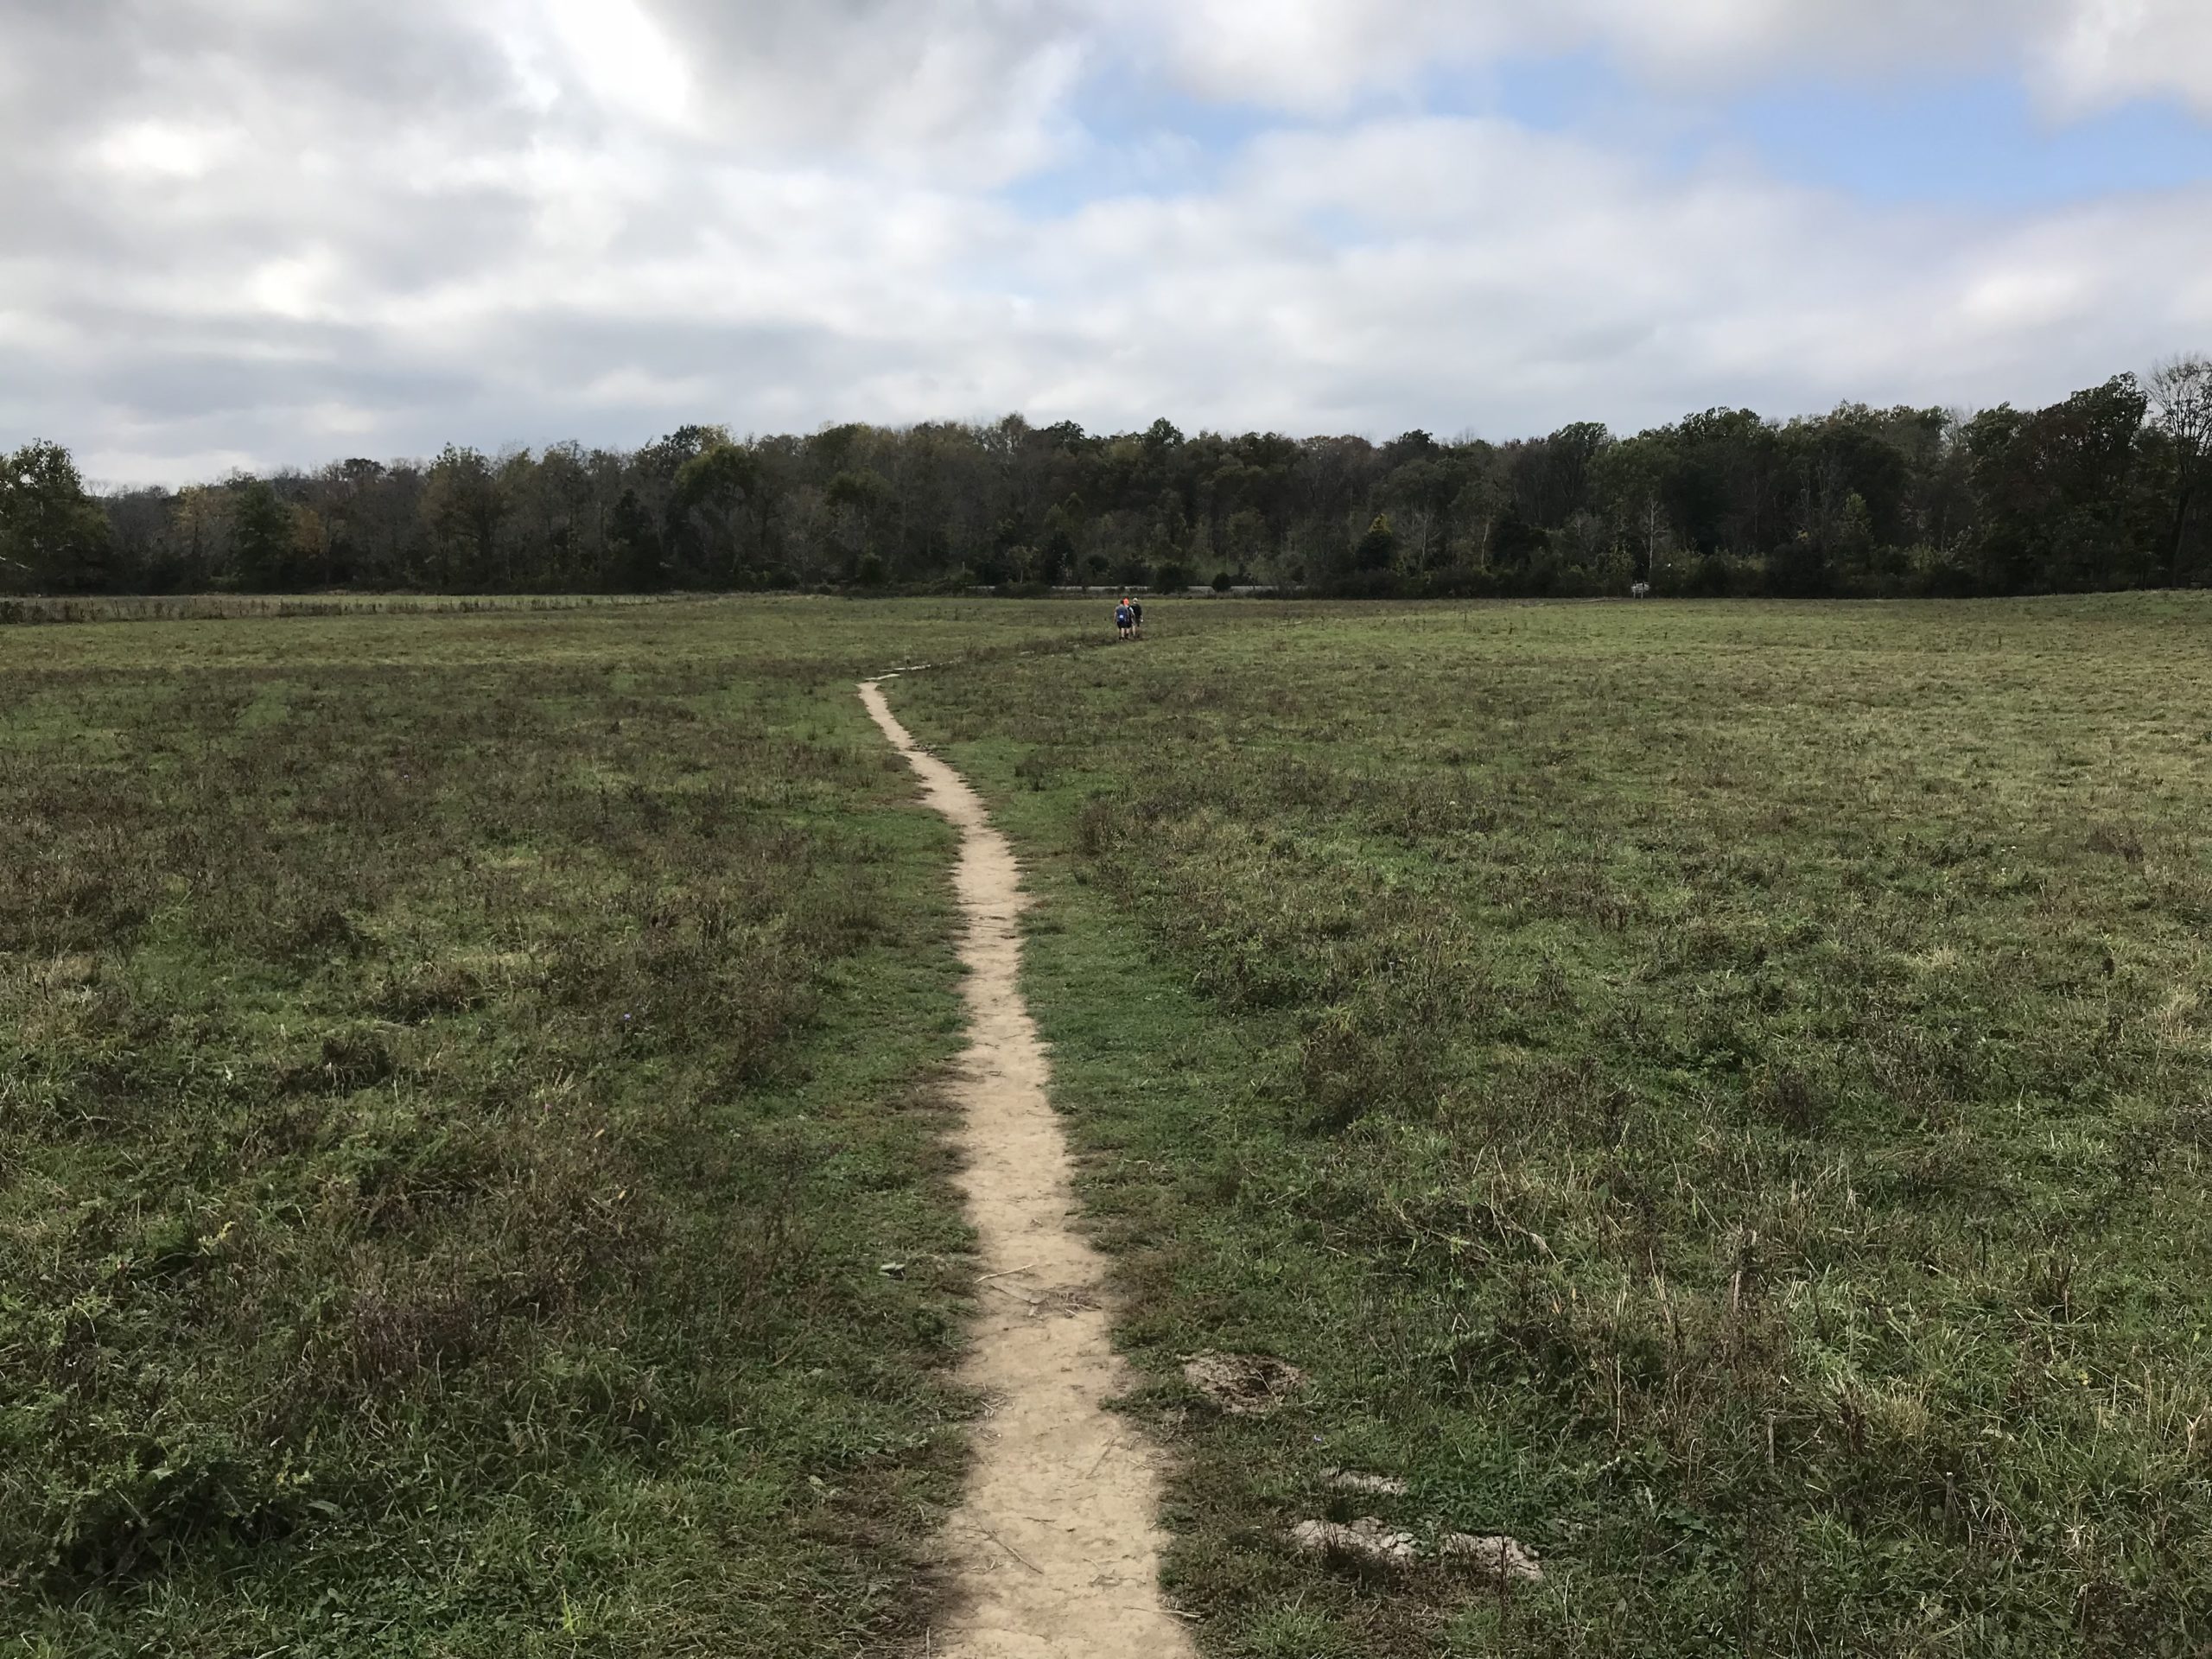 Appalachian Trail through a cow pasture